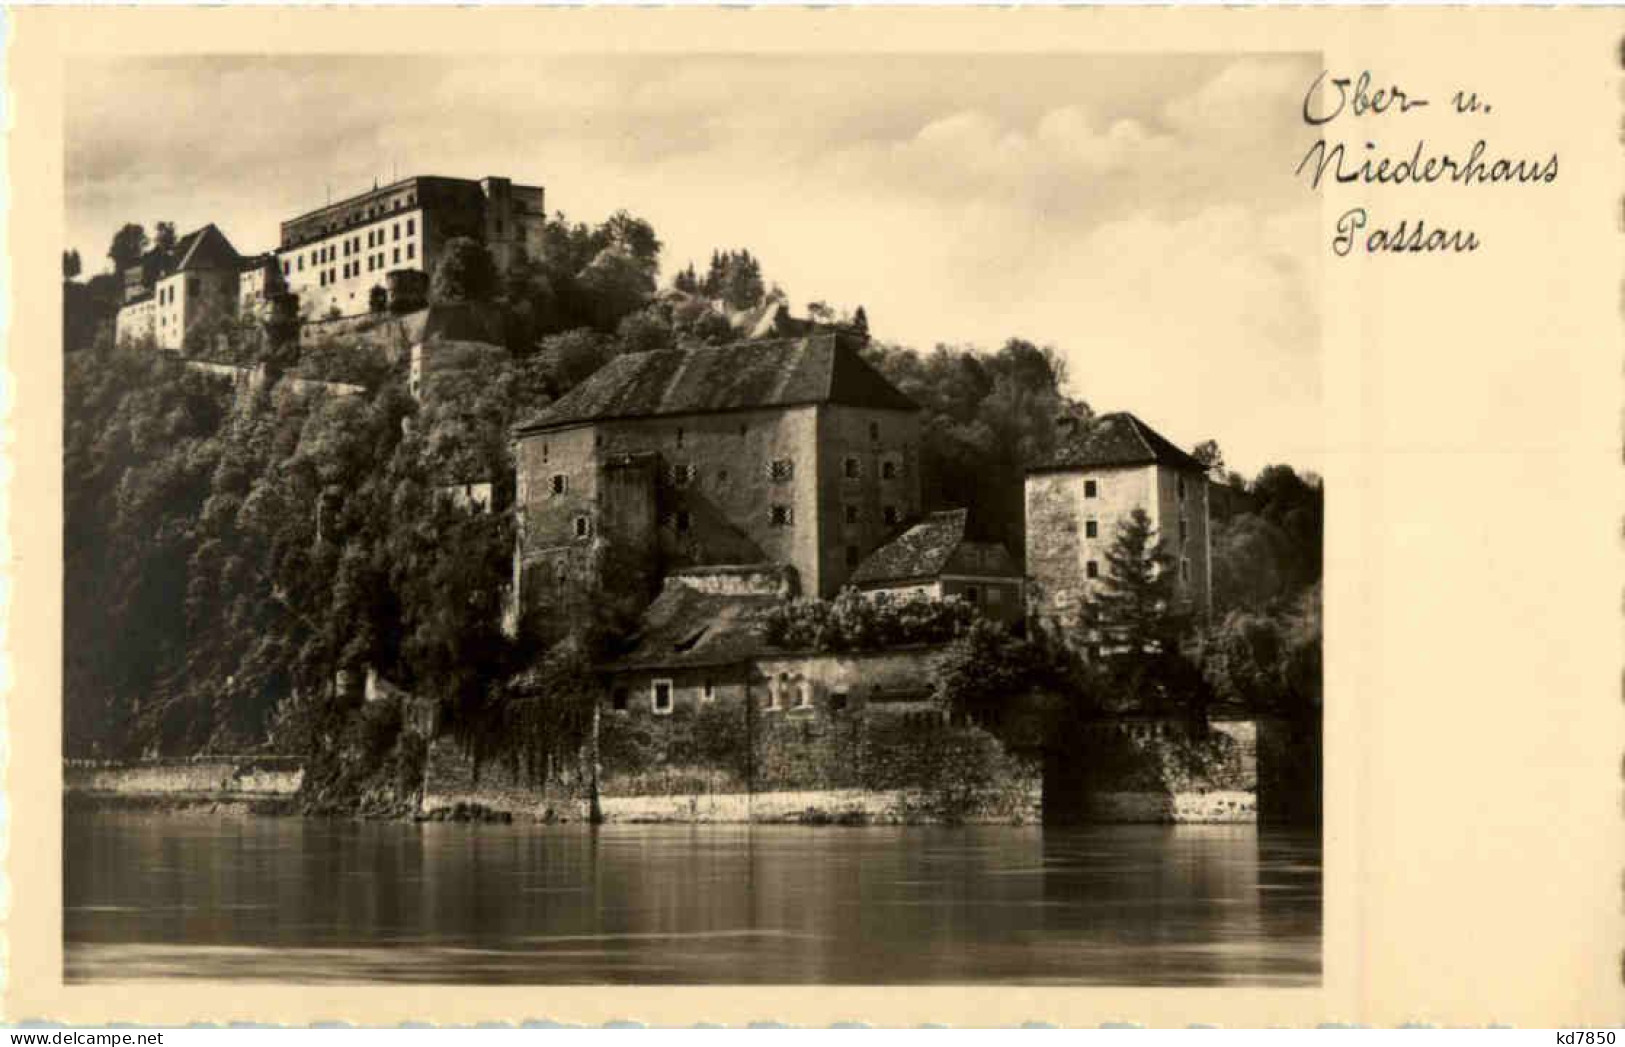 Ober Und Niederhaus - Passau - Passau